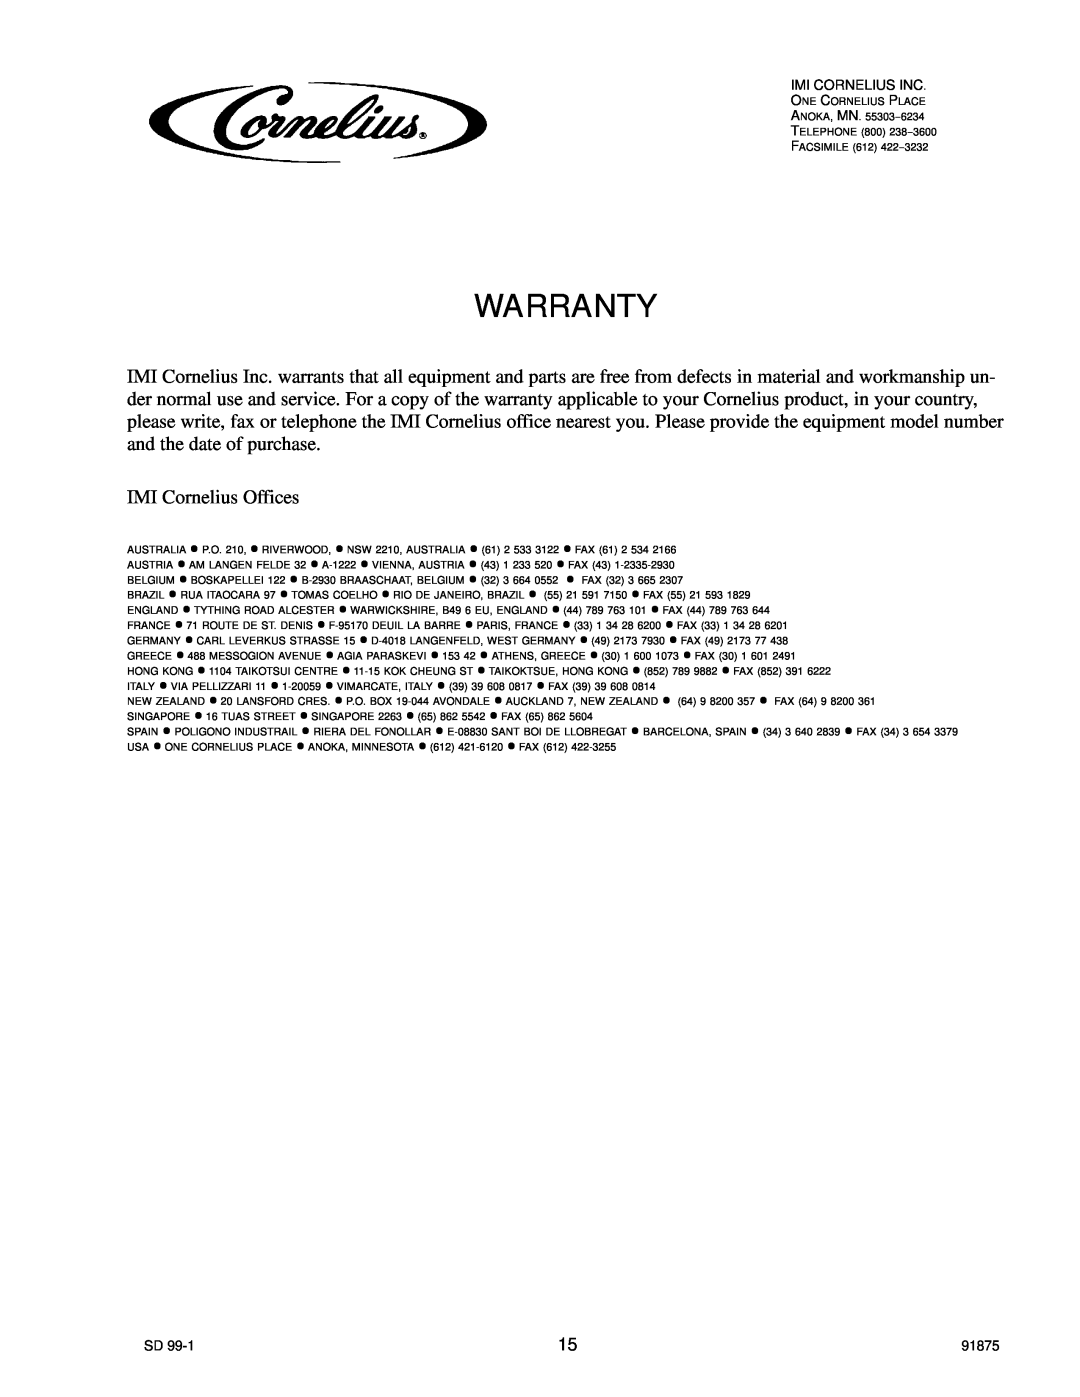 Cornelius D3030 manual Warranty, IMI Cornelius Offices 